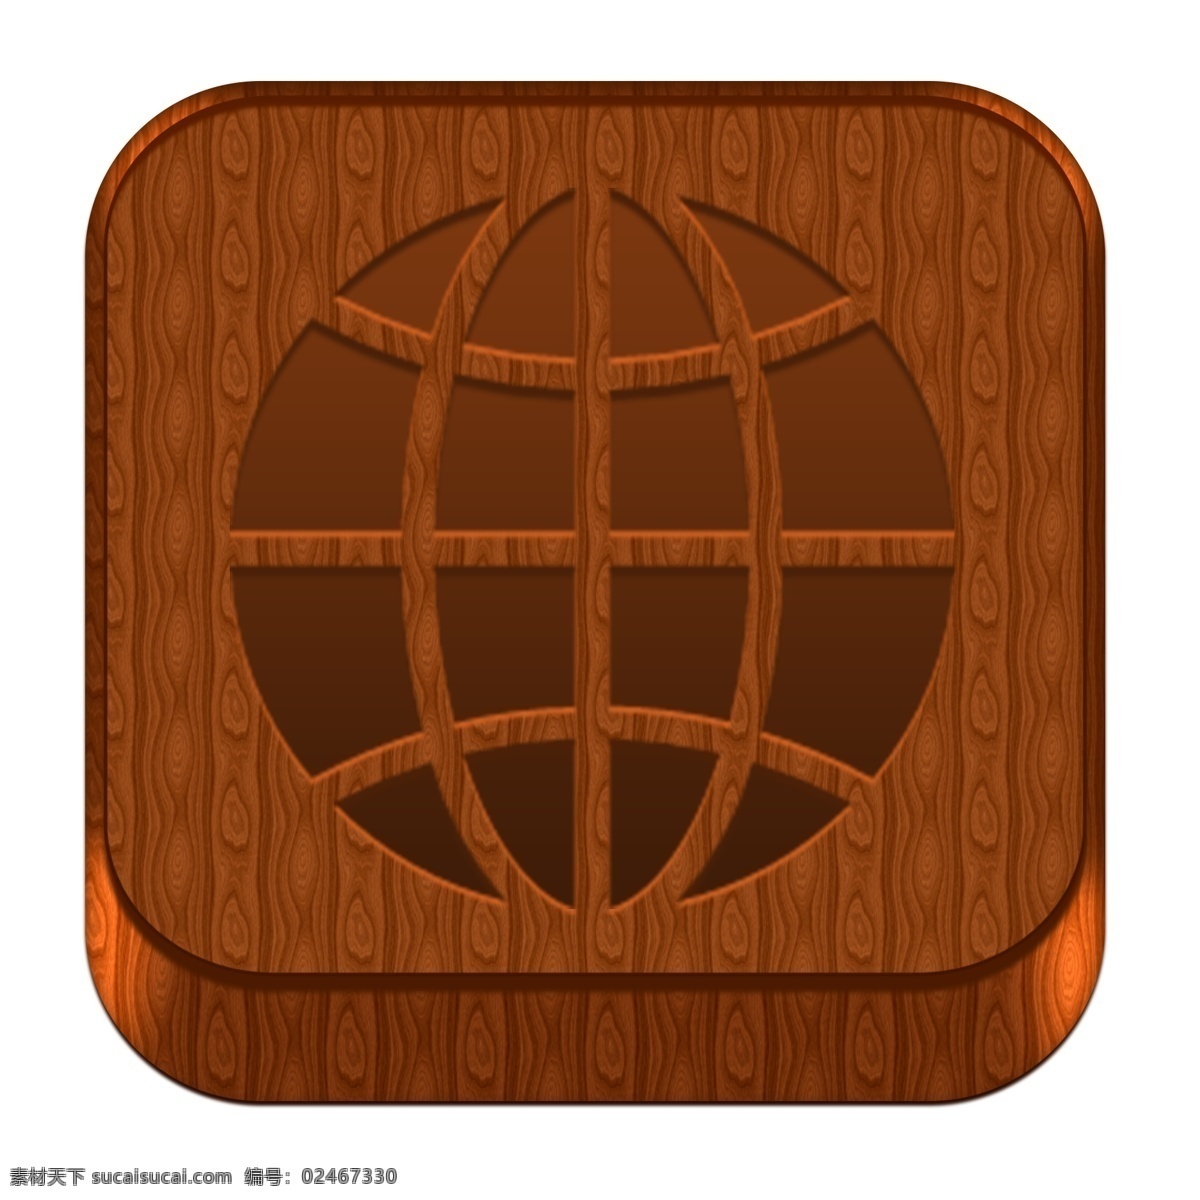 木质 材质 网络 浏览器 图标 ui图标 手机图标 木质材质 浏览器图白哦